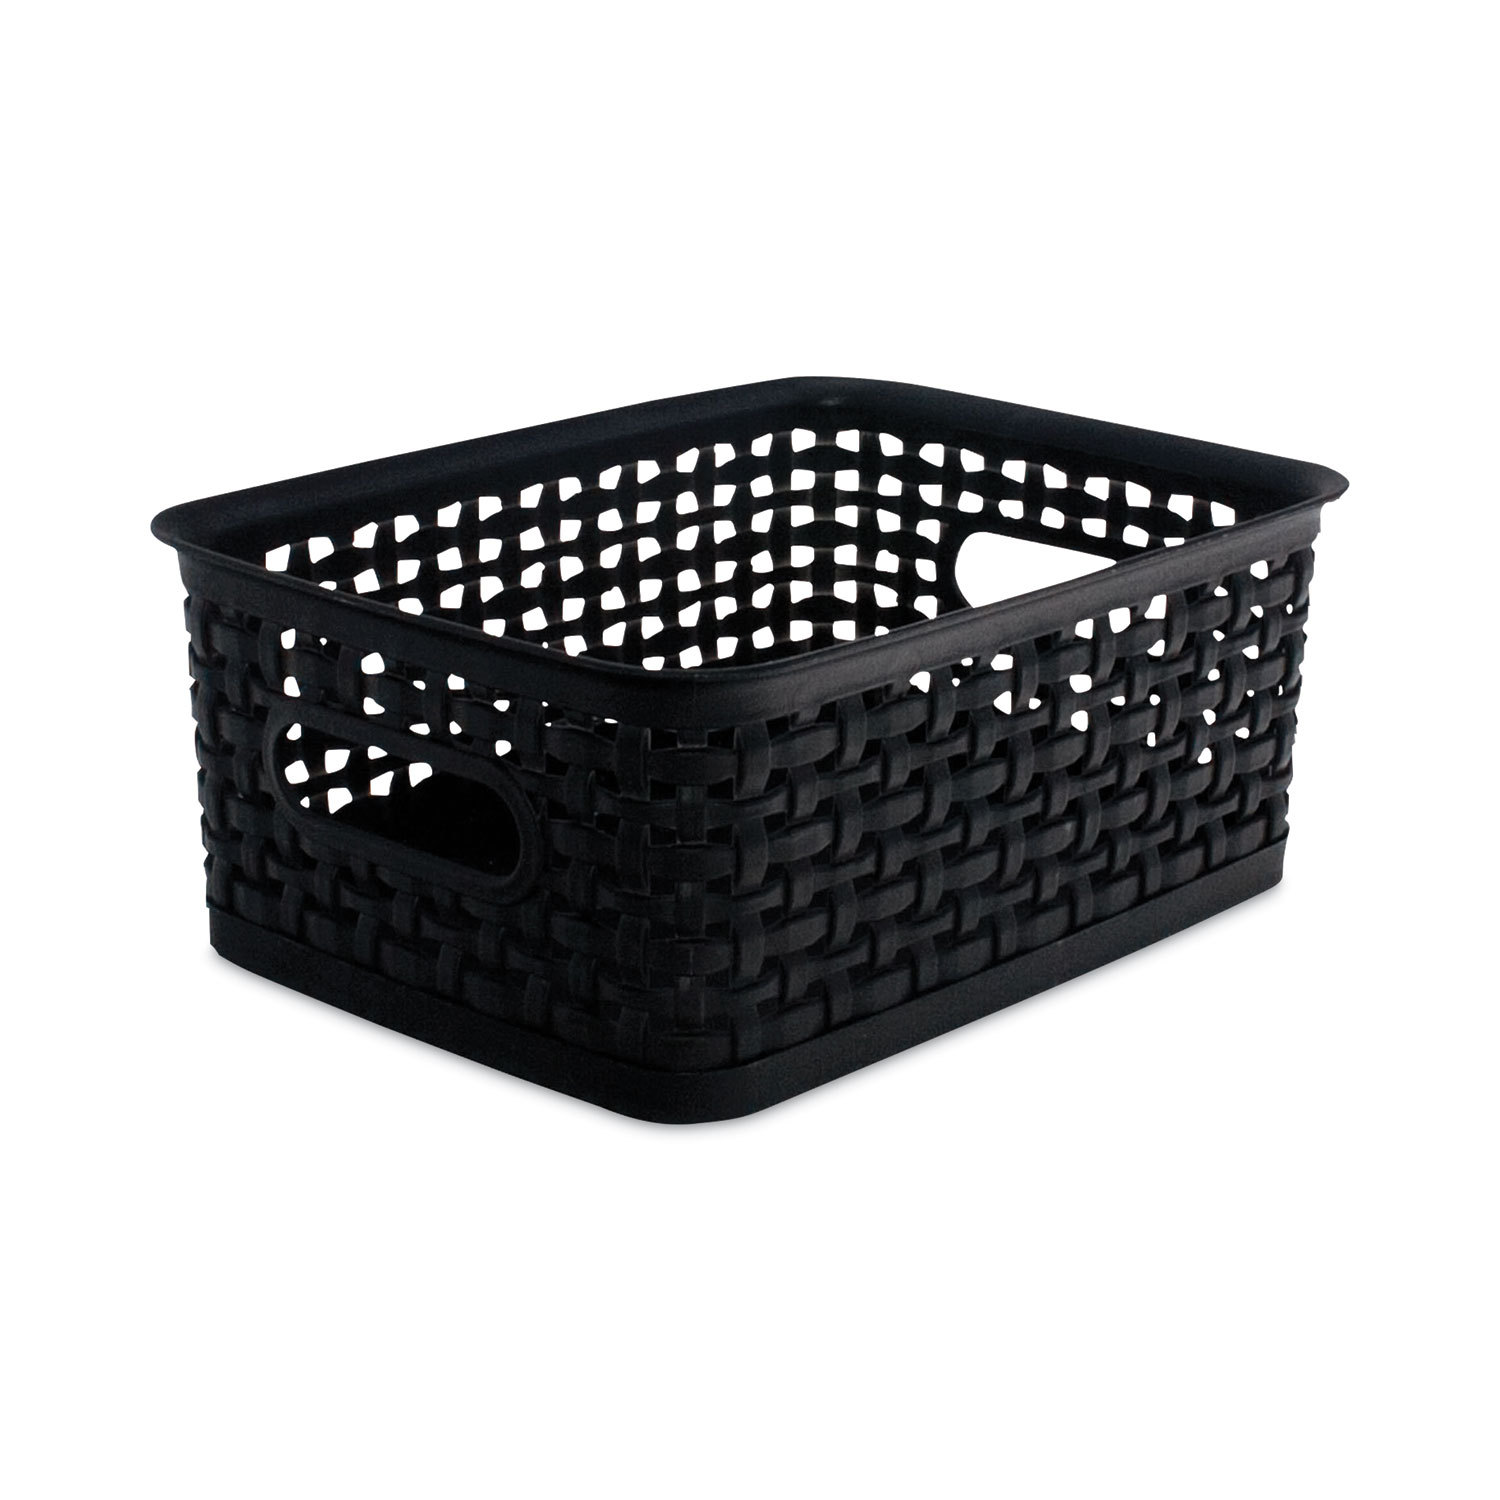 Weave Design Plastic Bin Small, Black, 9.875"L x 7.375"W x 4"H - image 4 of 4